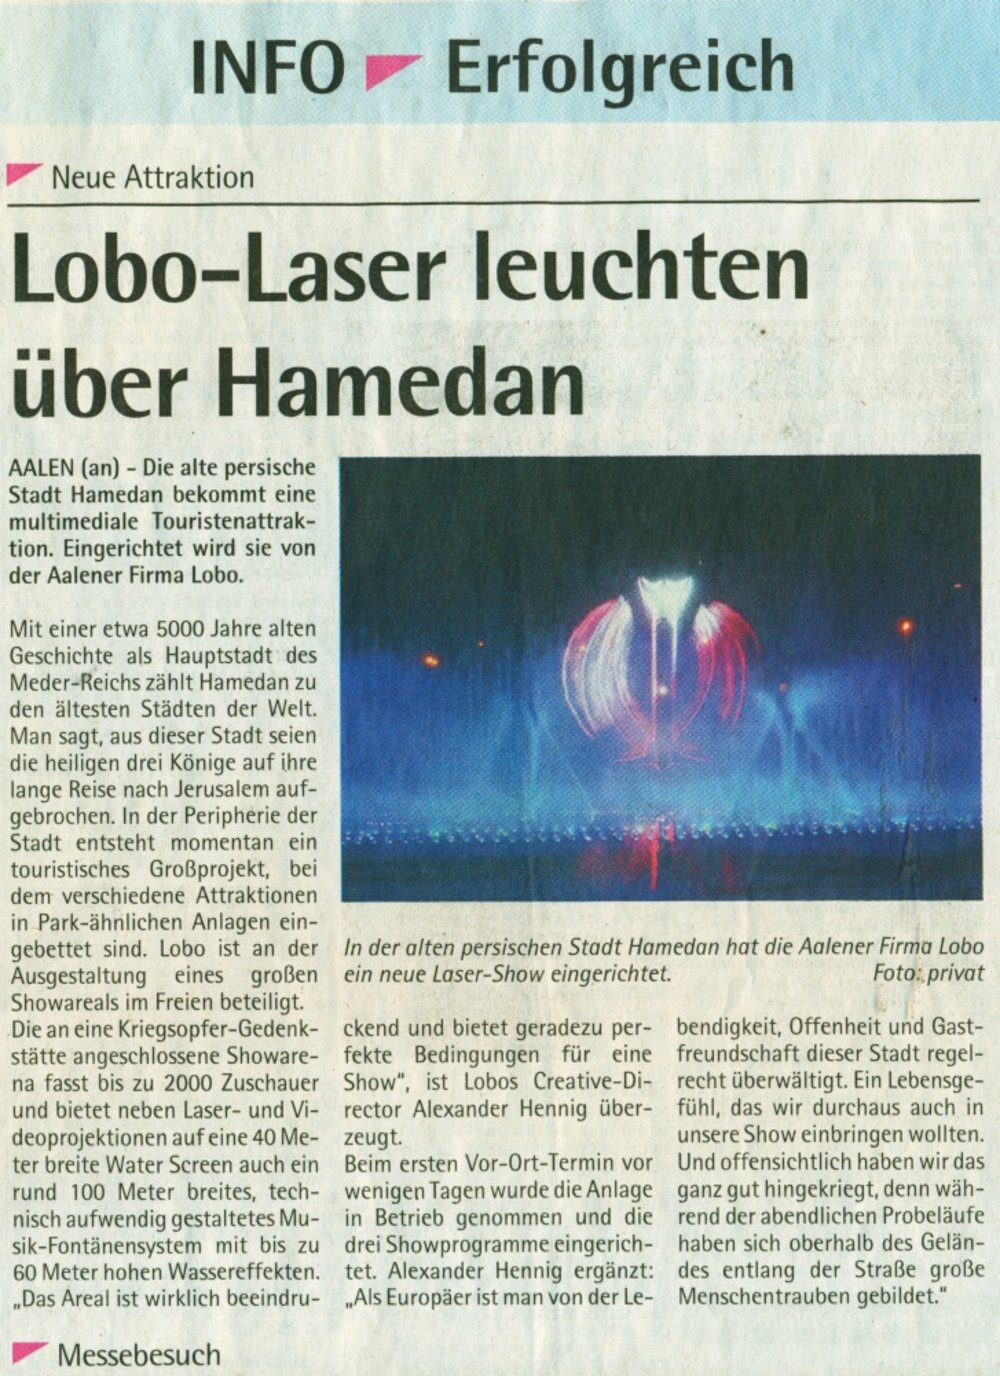 Ipf und Jagst Zeitung INFO Der Suedfinder 10 November 2010 S3 Laser leuchten ueber Hamedan